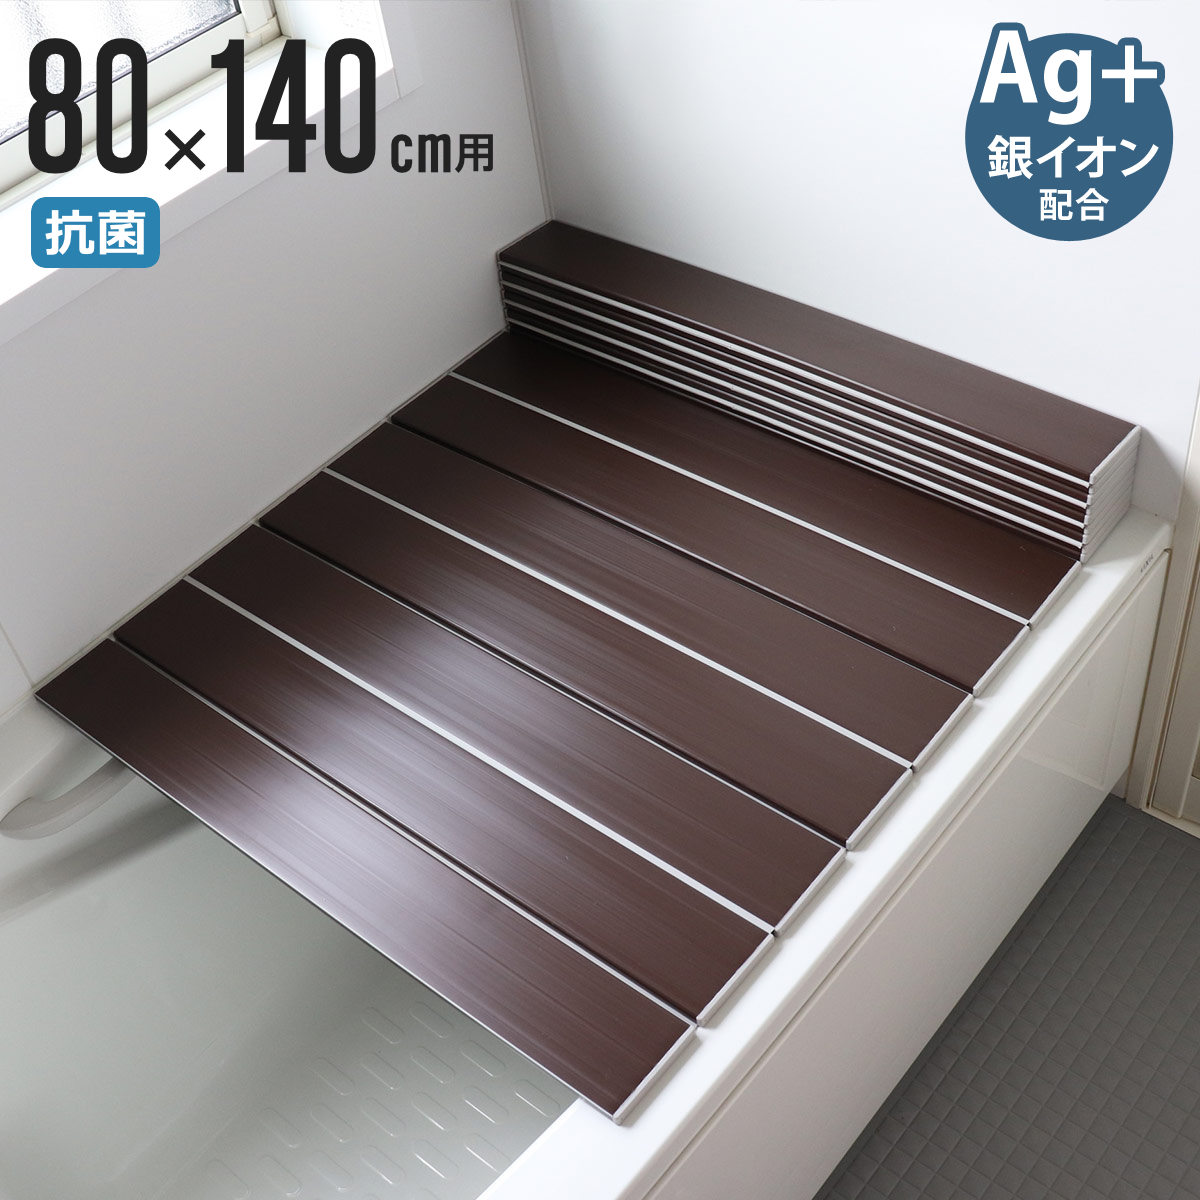 コンパクト 風呂ふた ネクスト Ag銀イオン 80×140cm W-14